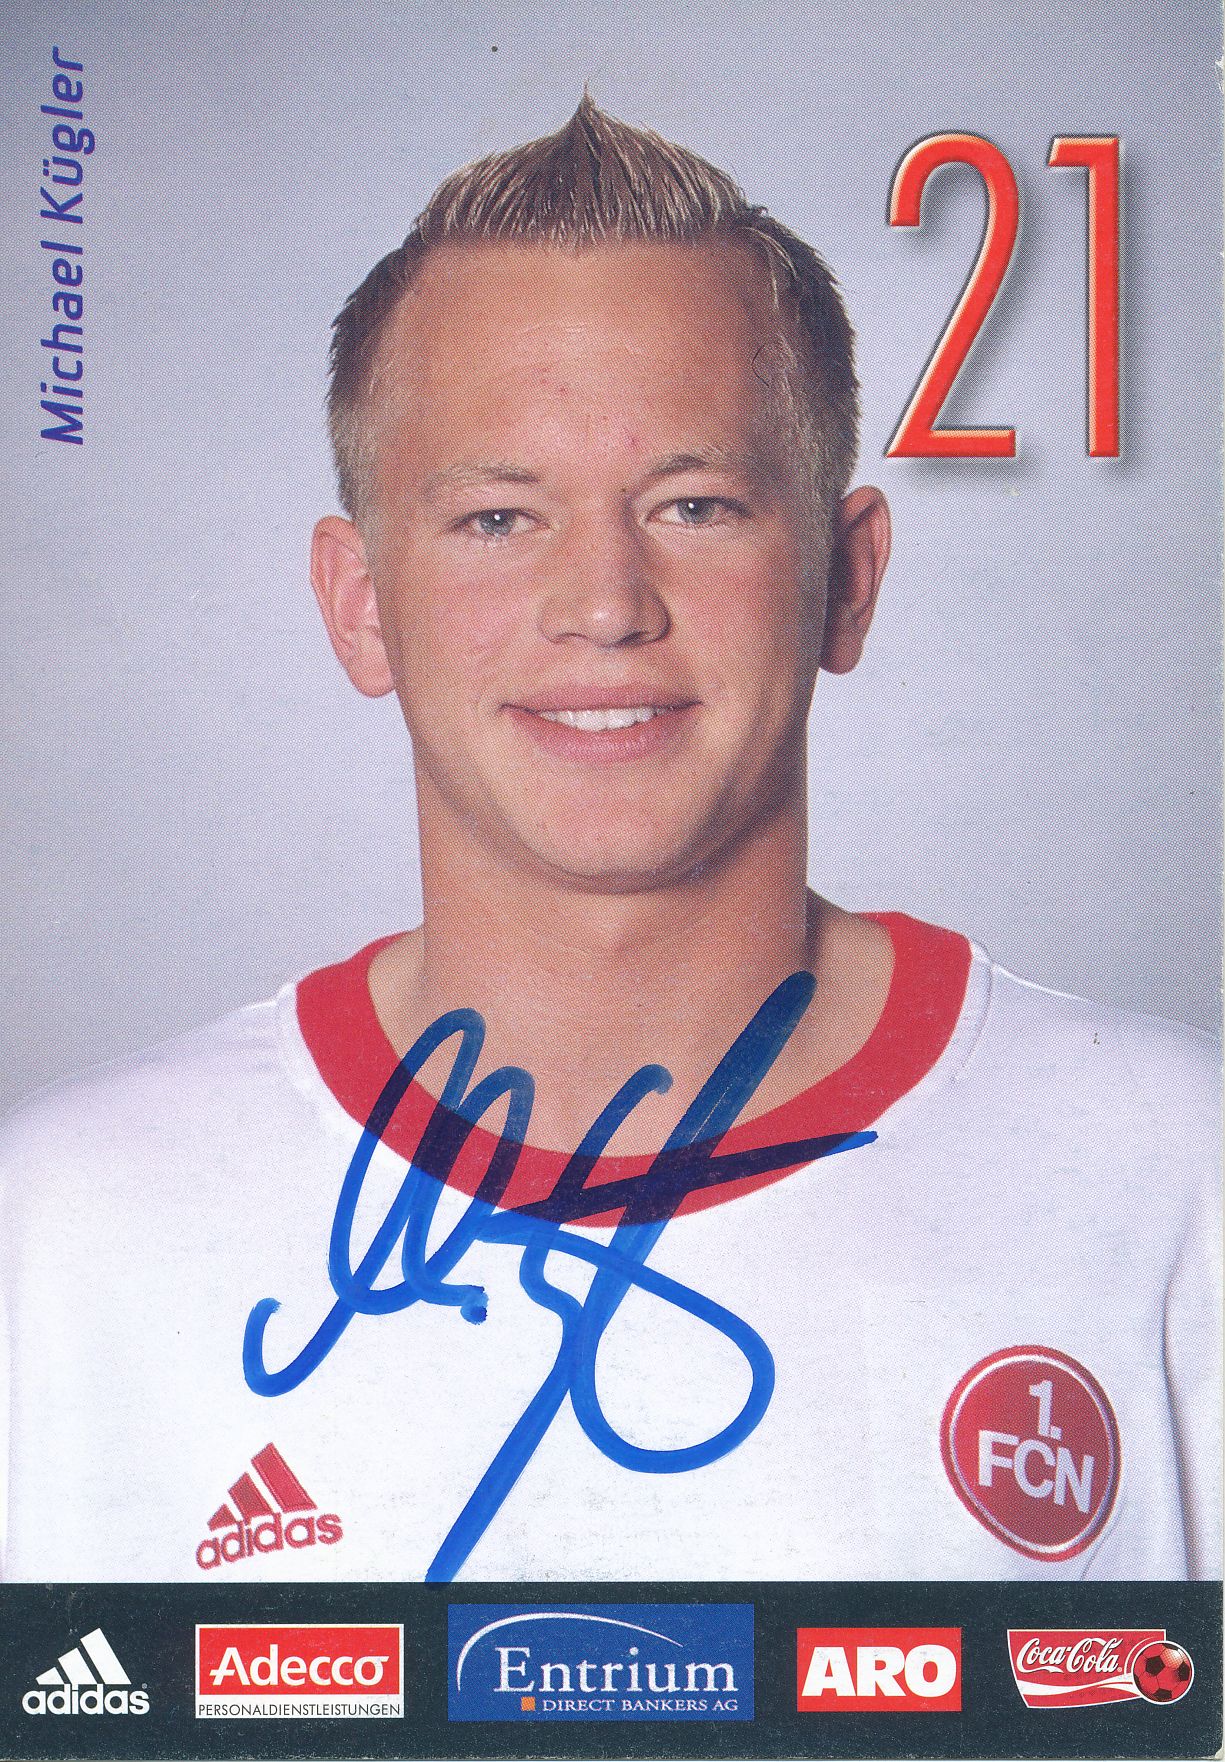 A 64530 Michael Kügler Autogrammkarte 1.FC Nürnberg 2002/03 Original Signiert